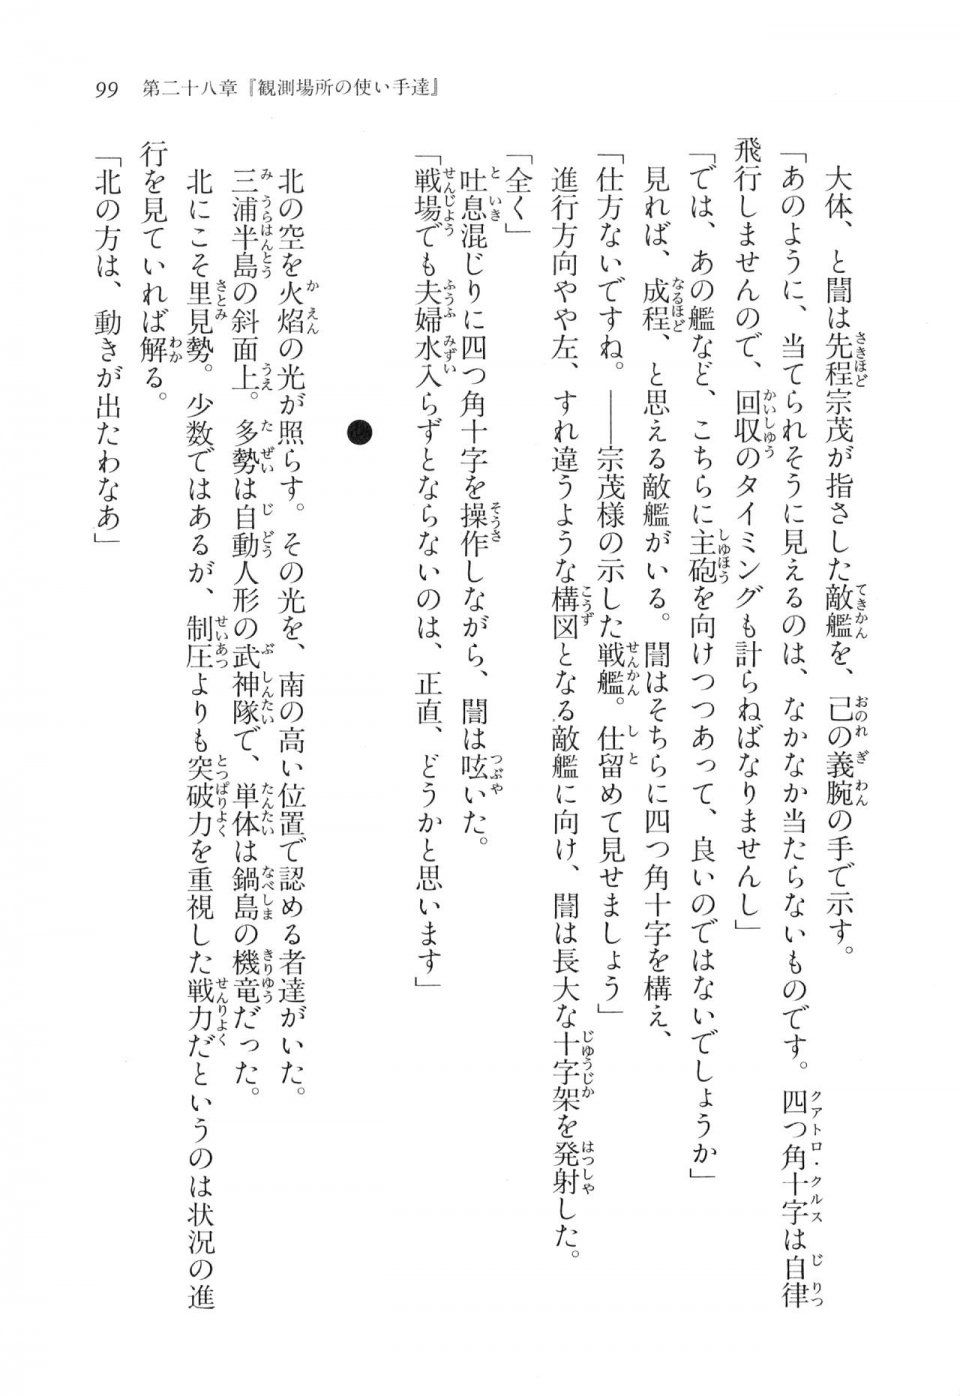 Kyoukai Senjou no Horizon LN Vol 17(7B) - Photo #99